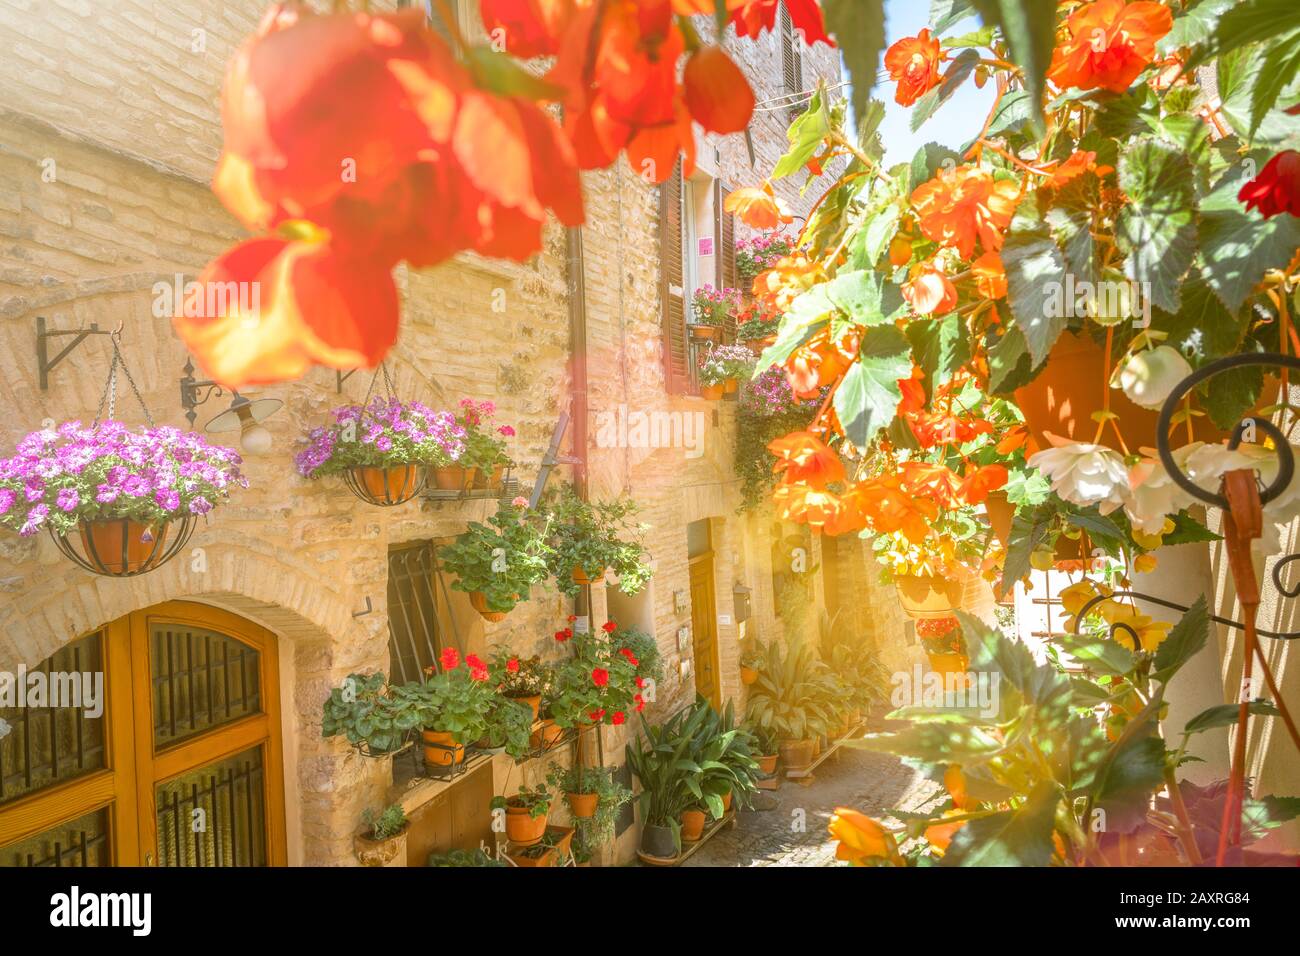 Flower splendor in Spello, Perugia province, Umbria, Italy Stock Photo